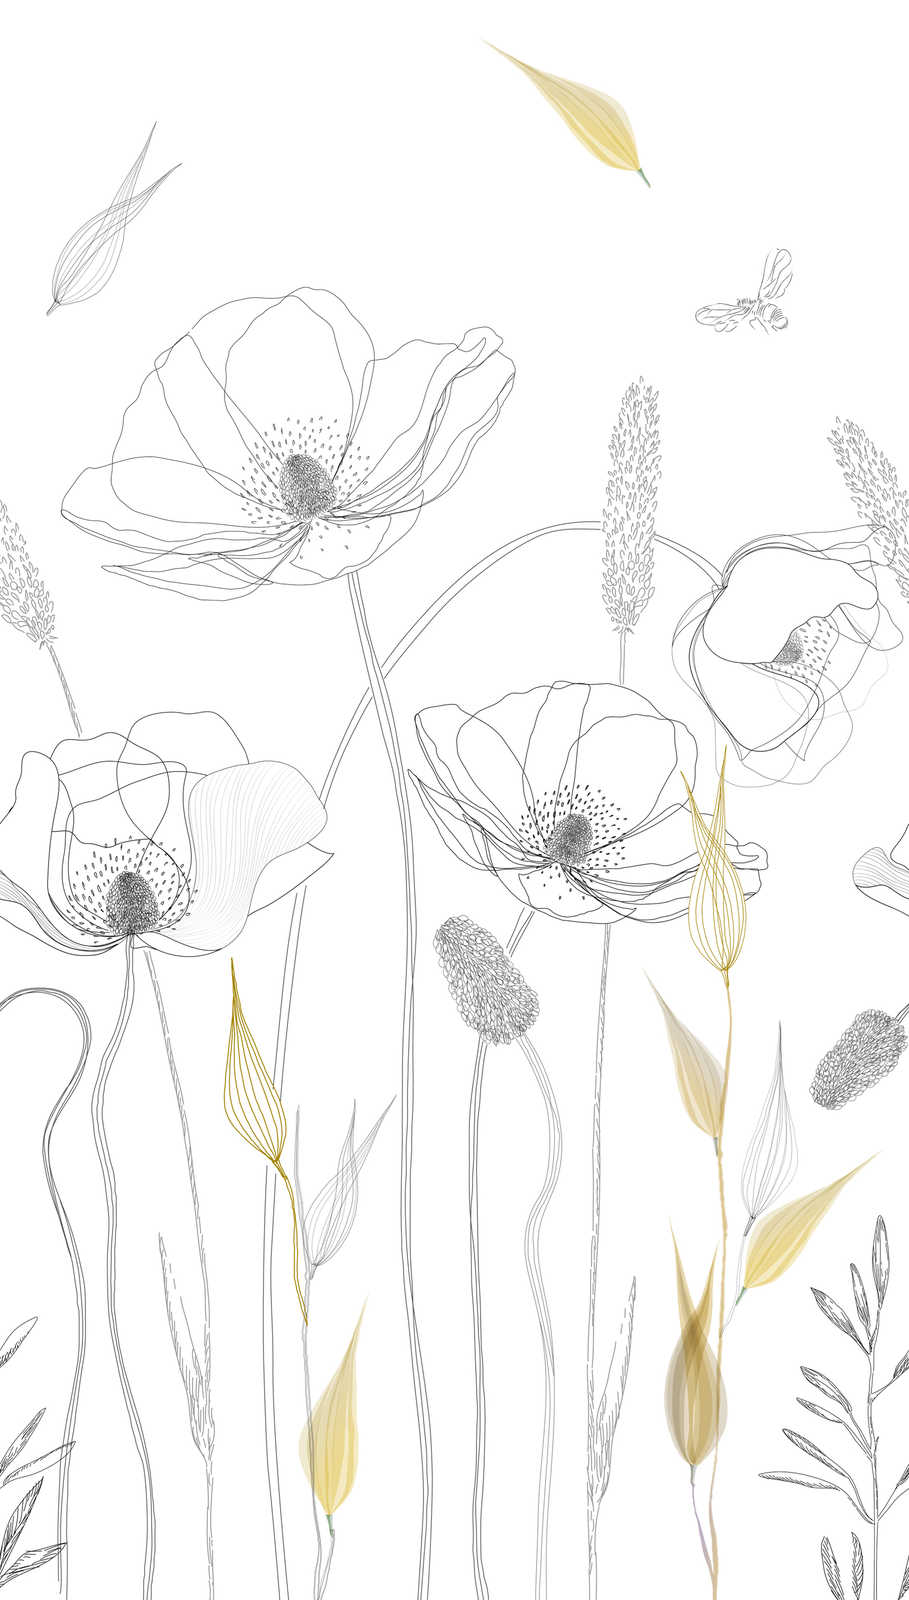             Feine Blumenmotiv Tapete in gezeichnetem Stil – Weiß, Schwarz, Gelb
        